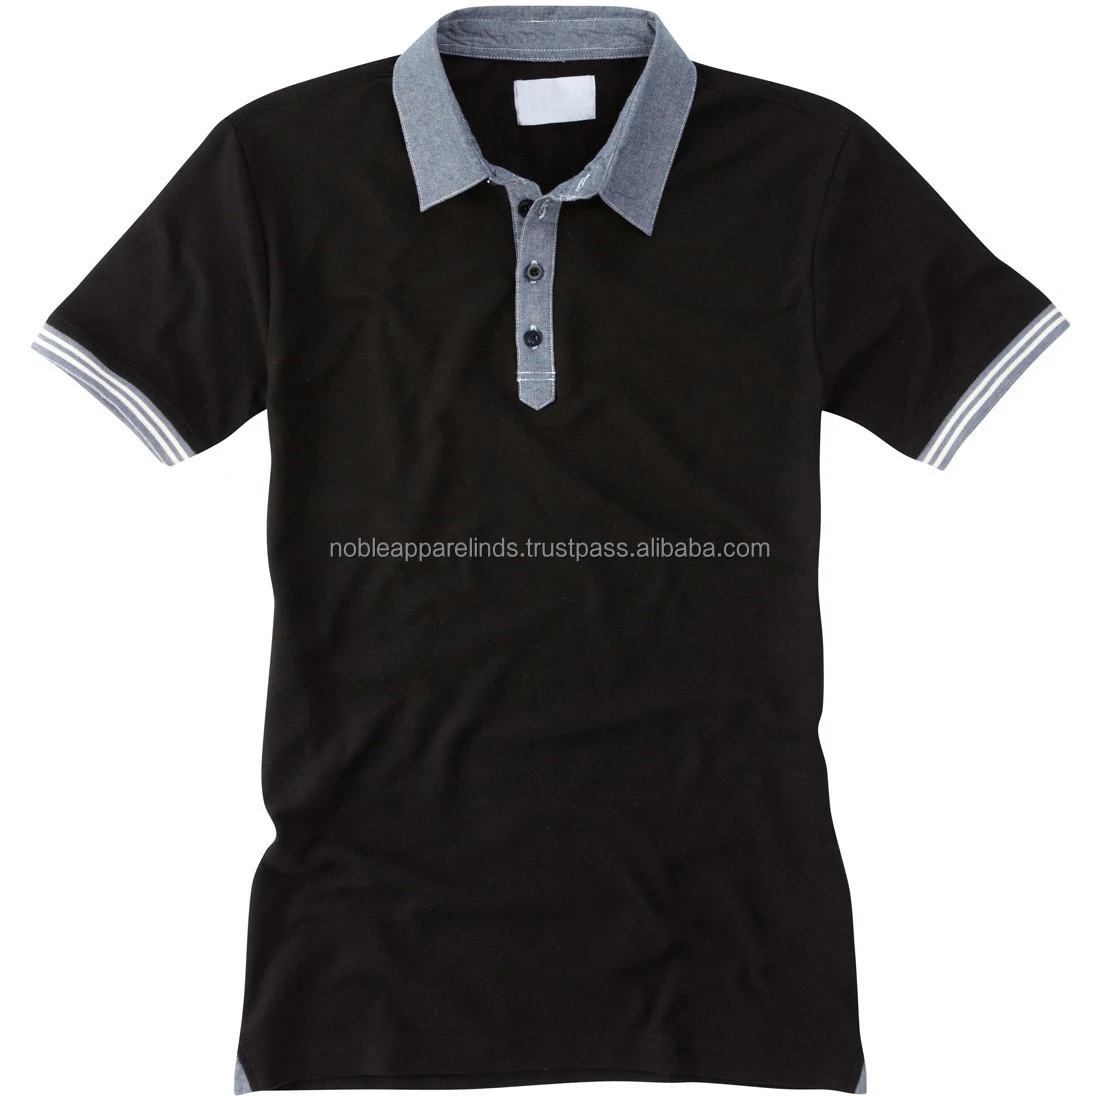 昇華印刷ゴルフtシャツカスタムブランドポロシャツカラーブラックナイススタイルポロtシャツ男性女性用 Buy ブランドロゴポロシャツ色黒 偉大な高貴ロゴポロtシャツ カスタムポロシャツデザイン色ホワイト Product On Alibaba Com